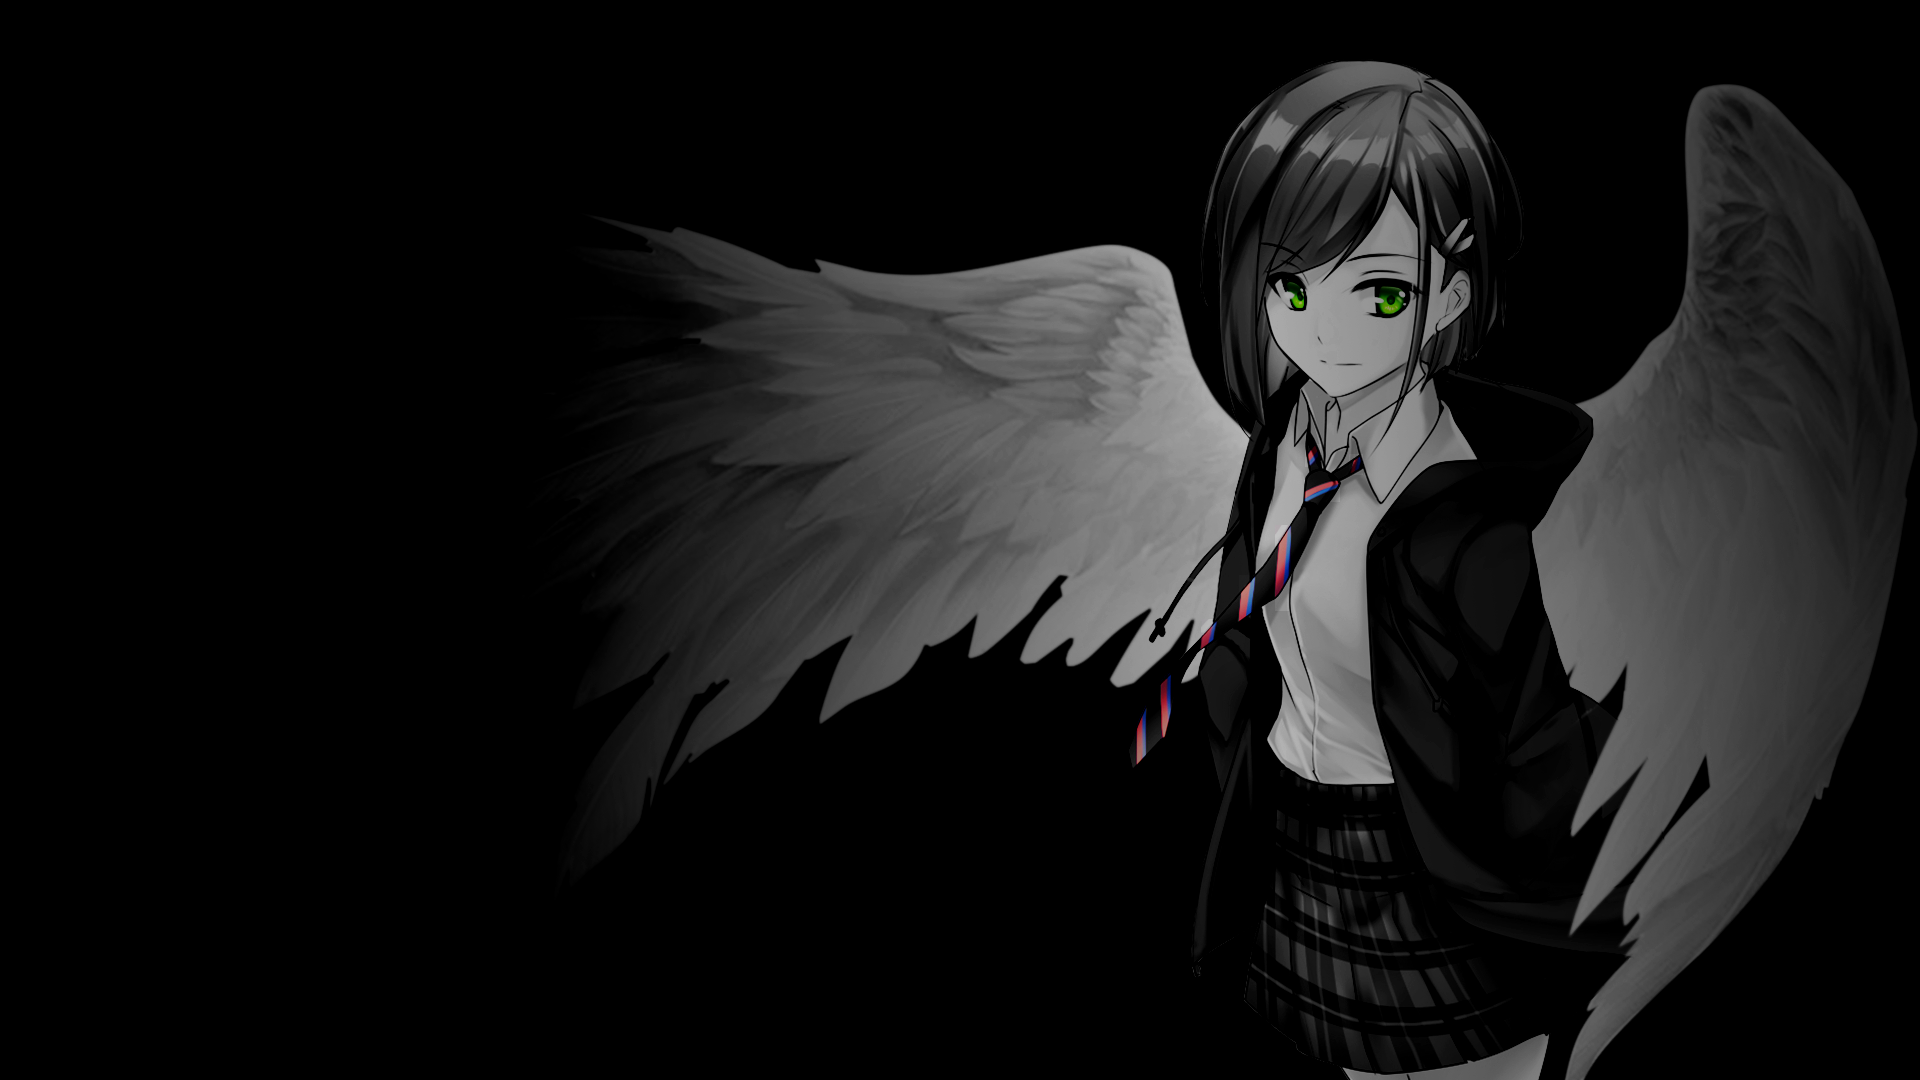 Anime 1920x1080 anime girls selective coloring black background simple background dark background wings